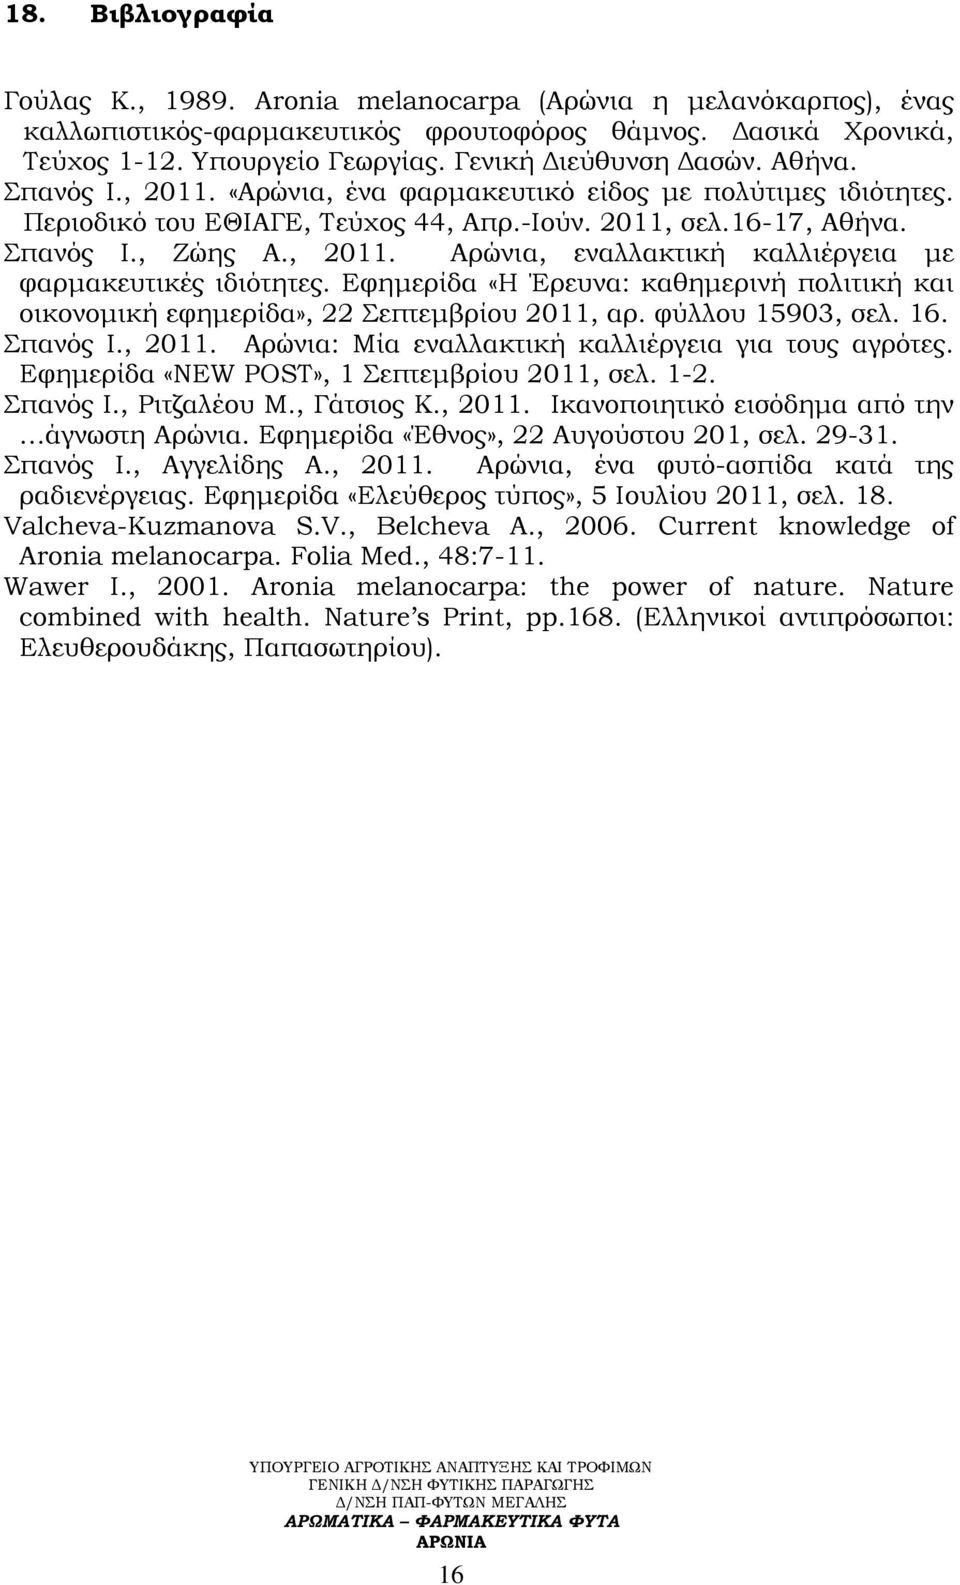 Εφημερίδα «Η Έρευνα: καθημερινή πολιτική και οικονομική εφημερίδα», 22 επτεμβρίου 2011, αρ. φύλλου 15903, σελ. 16. πανός Ι., 2011. Αρώνια: Μία εναλλακτική καλλιέργεια για τους αγρότες.